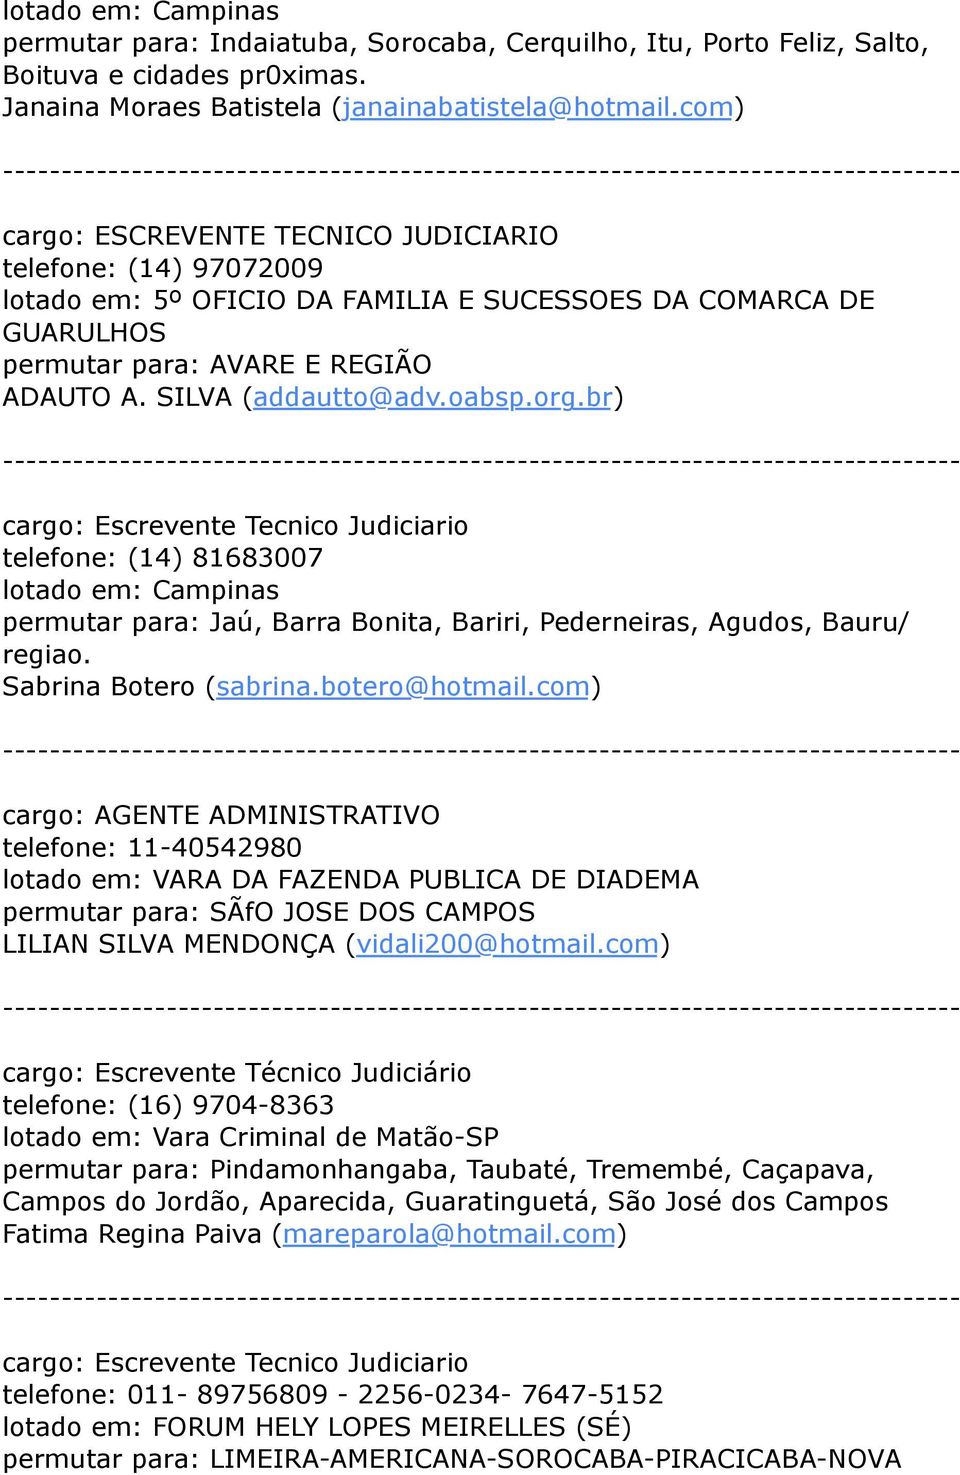 org.br) cargo: Escrevente Tecnico Judiciario telefone: (14) 81683007 lotado em: Campinas permutar para: Jaú, Barra Bonita, Bariri, Pederneiras, Agudos, Bauru/ regiao. Sabrina Botero (sabrina.